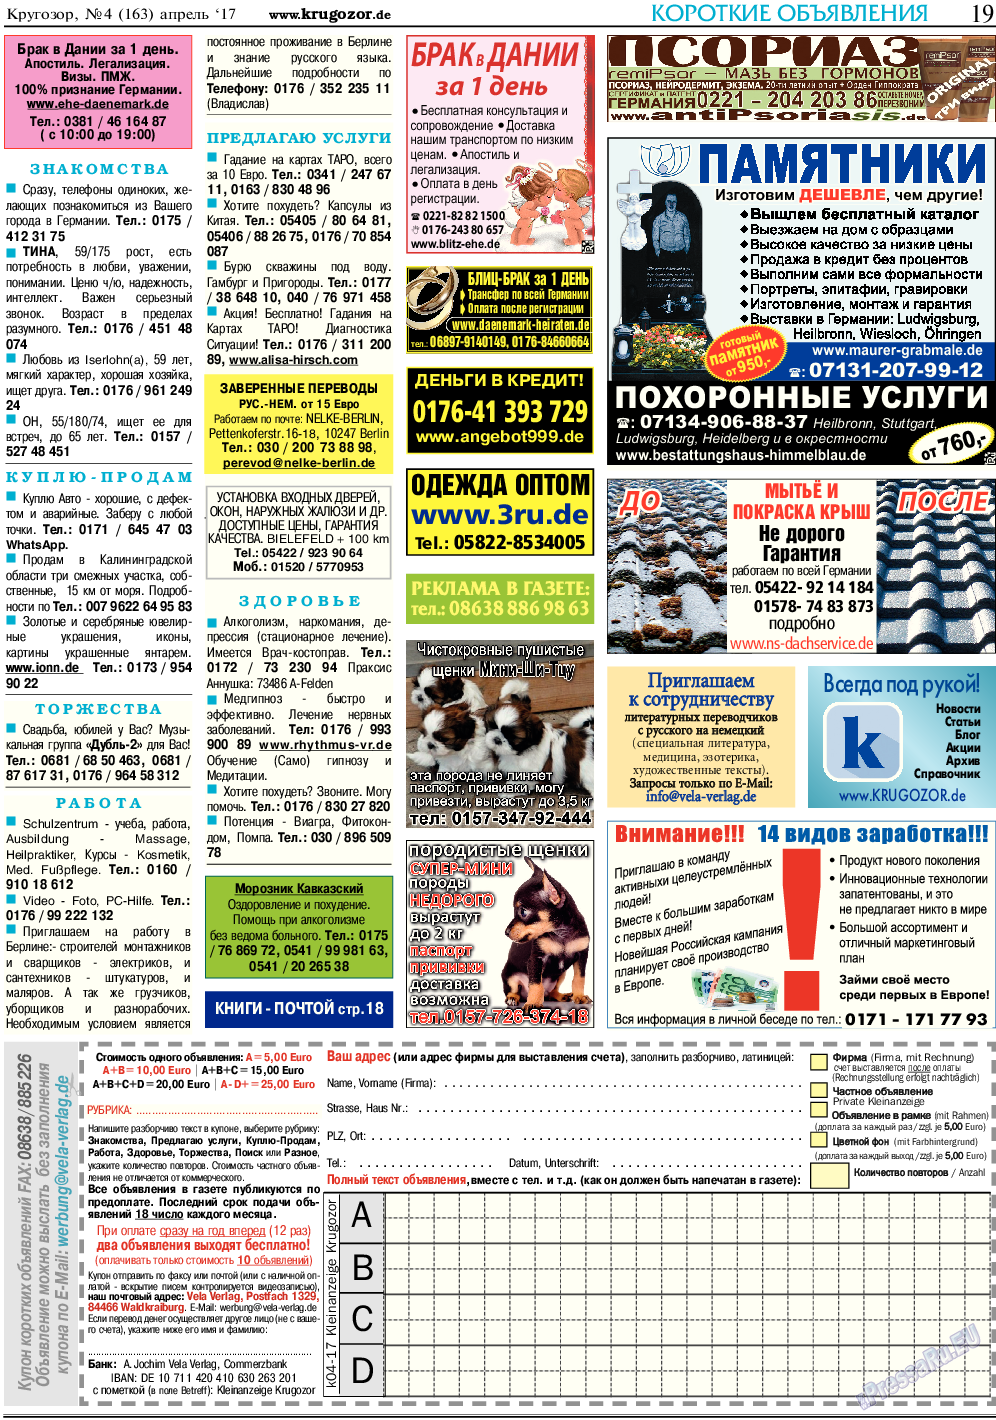 Кругозор, газета. 2017 №4 стр.19